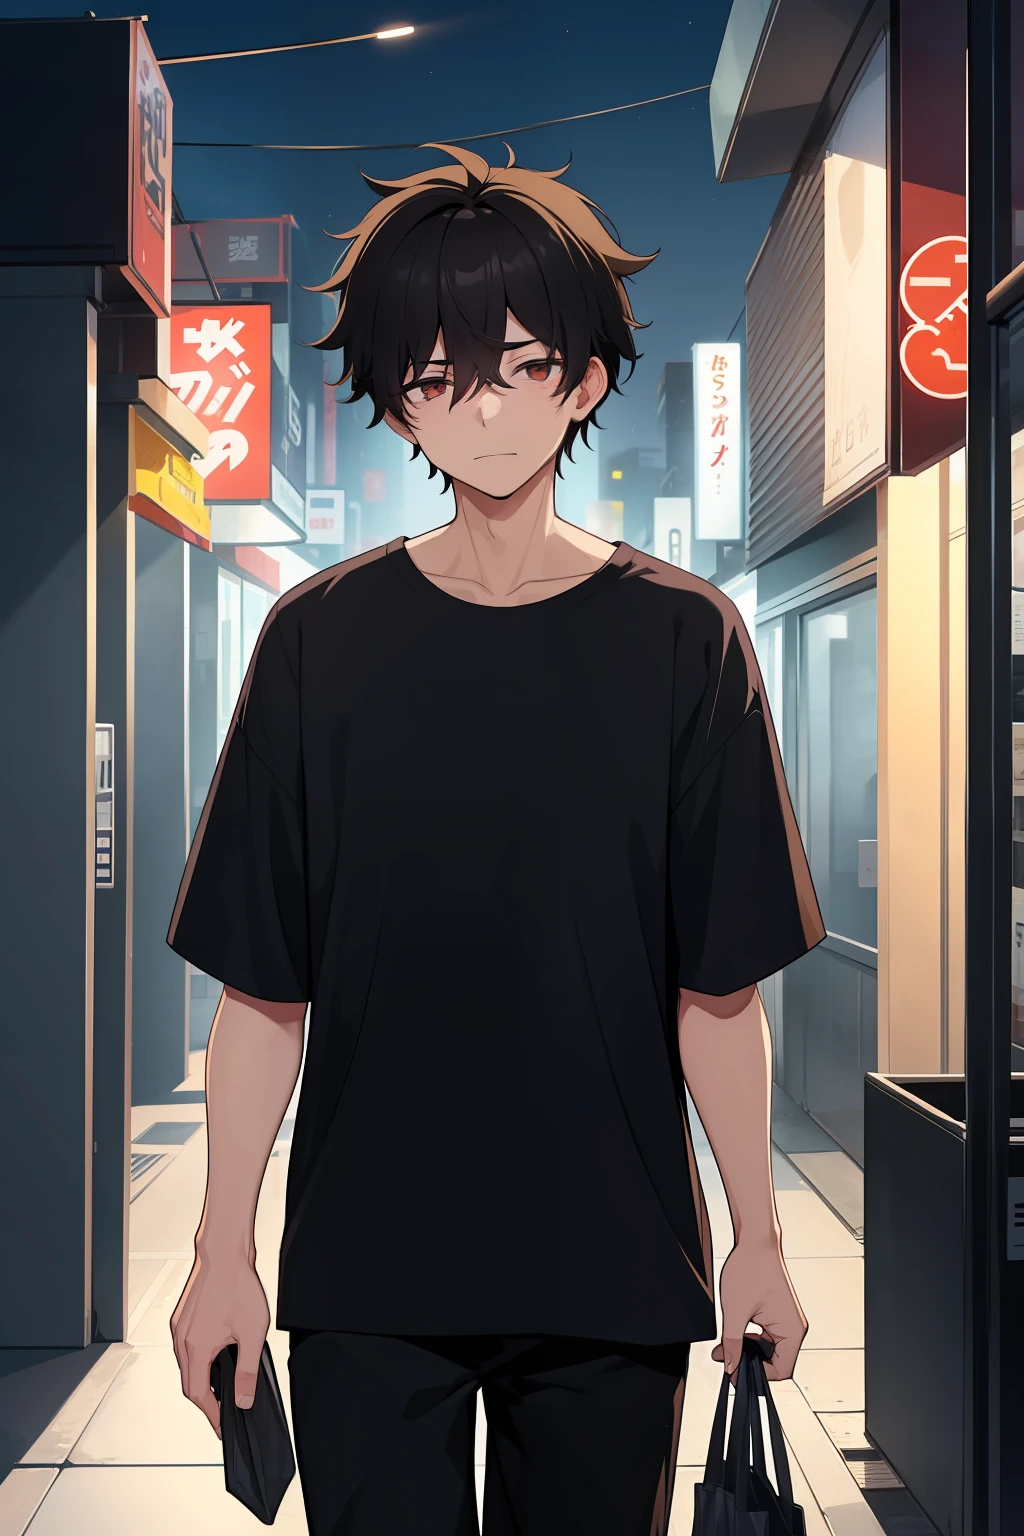 一名男性, 20歲, 劳累过度, 凌亂的黑髮, 黑色襯衫, 携带便利店袋子, 夜间在僻静的城区行走